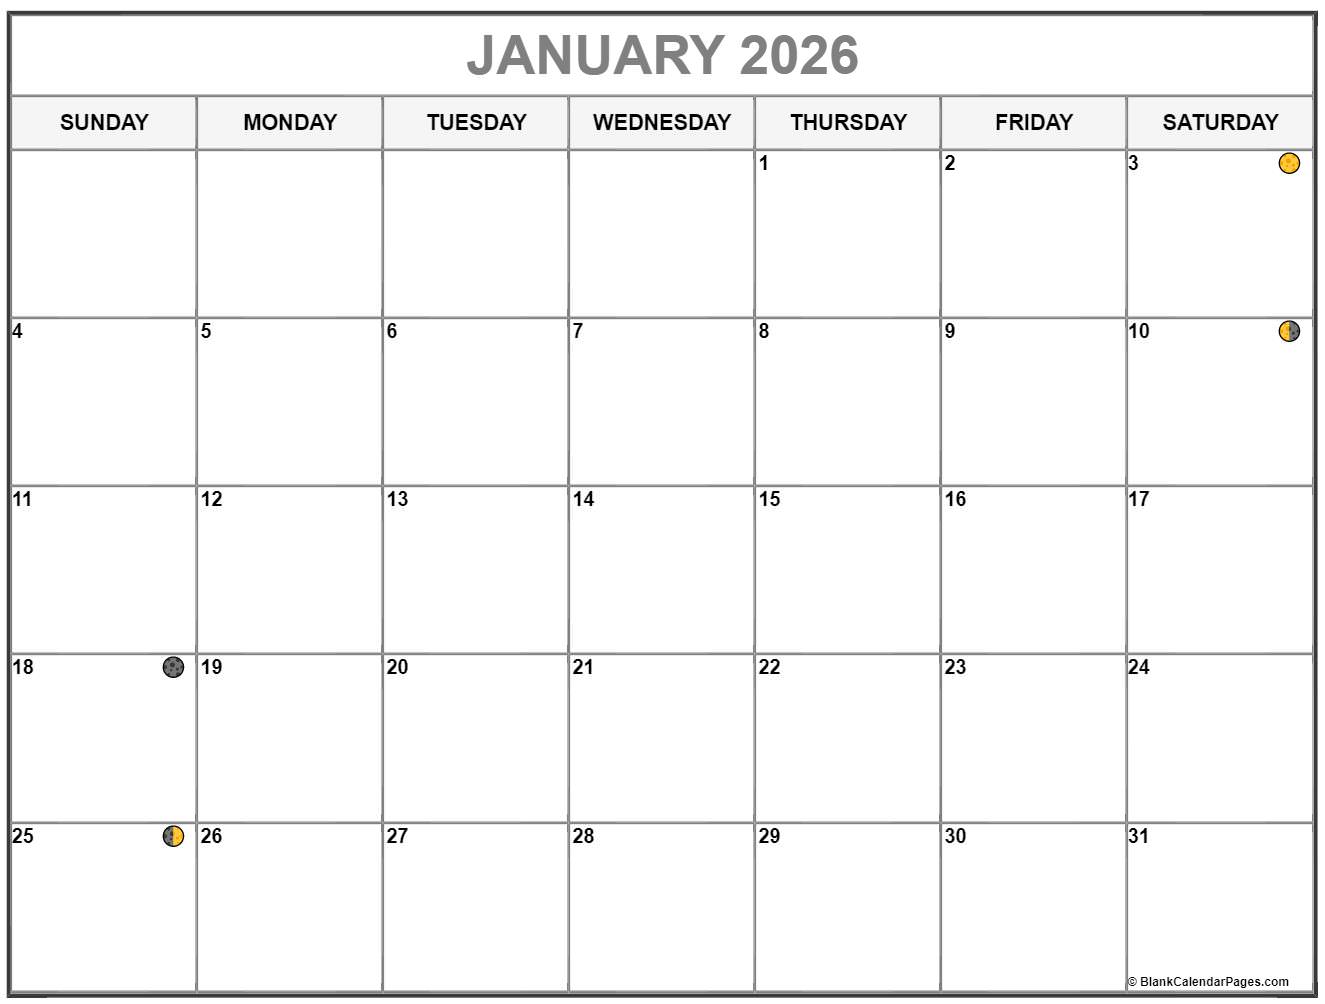 january-2026-lunar-calendar-moon-phase-calendar